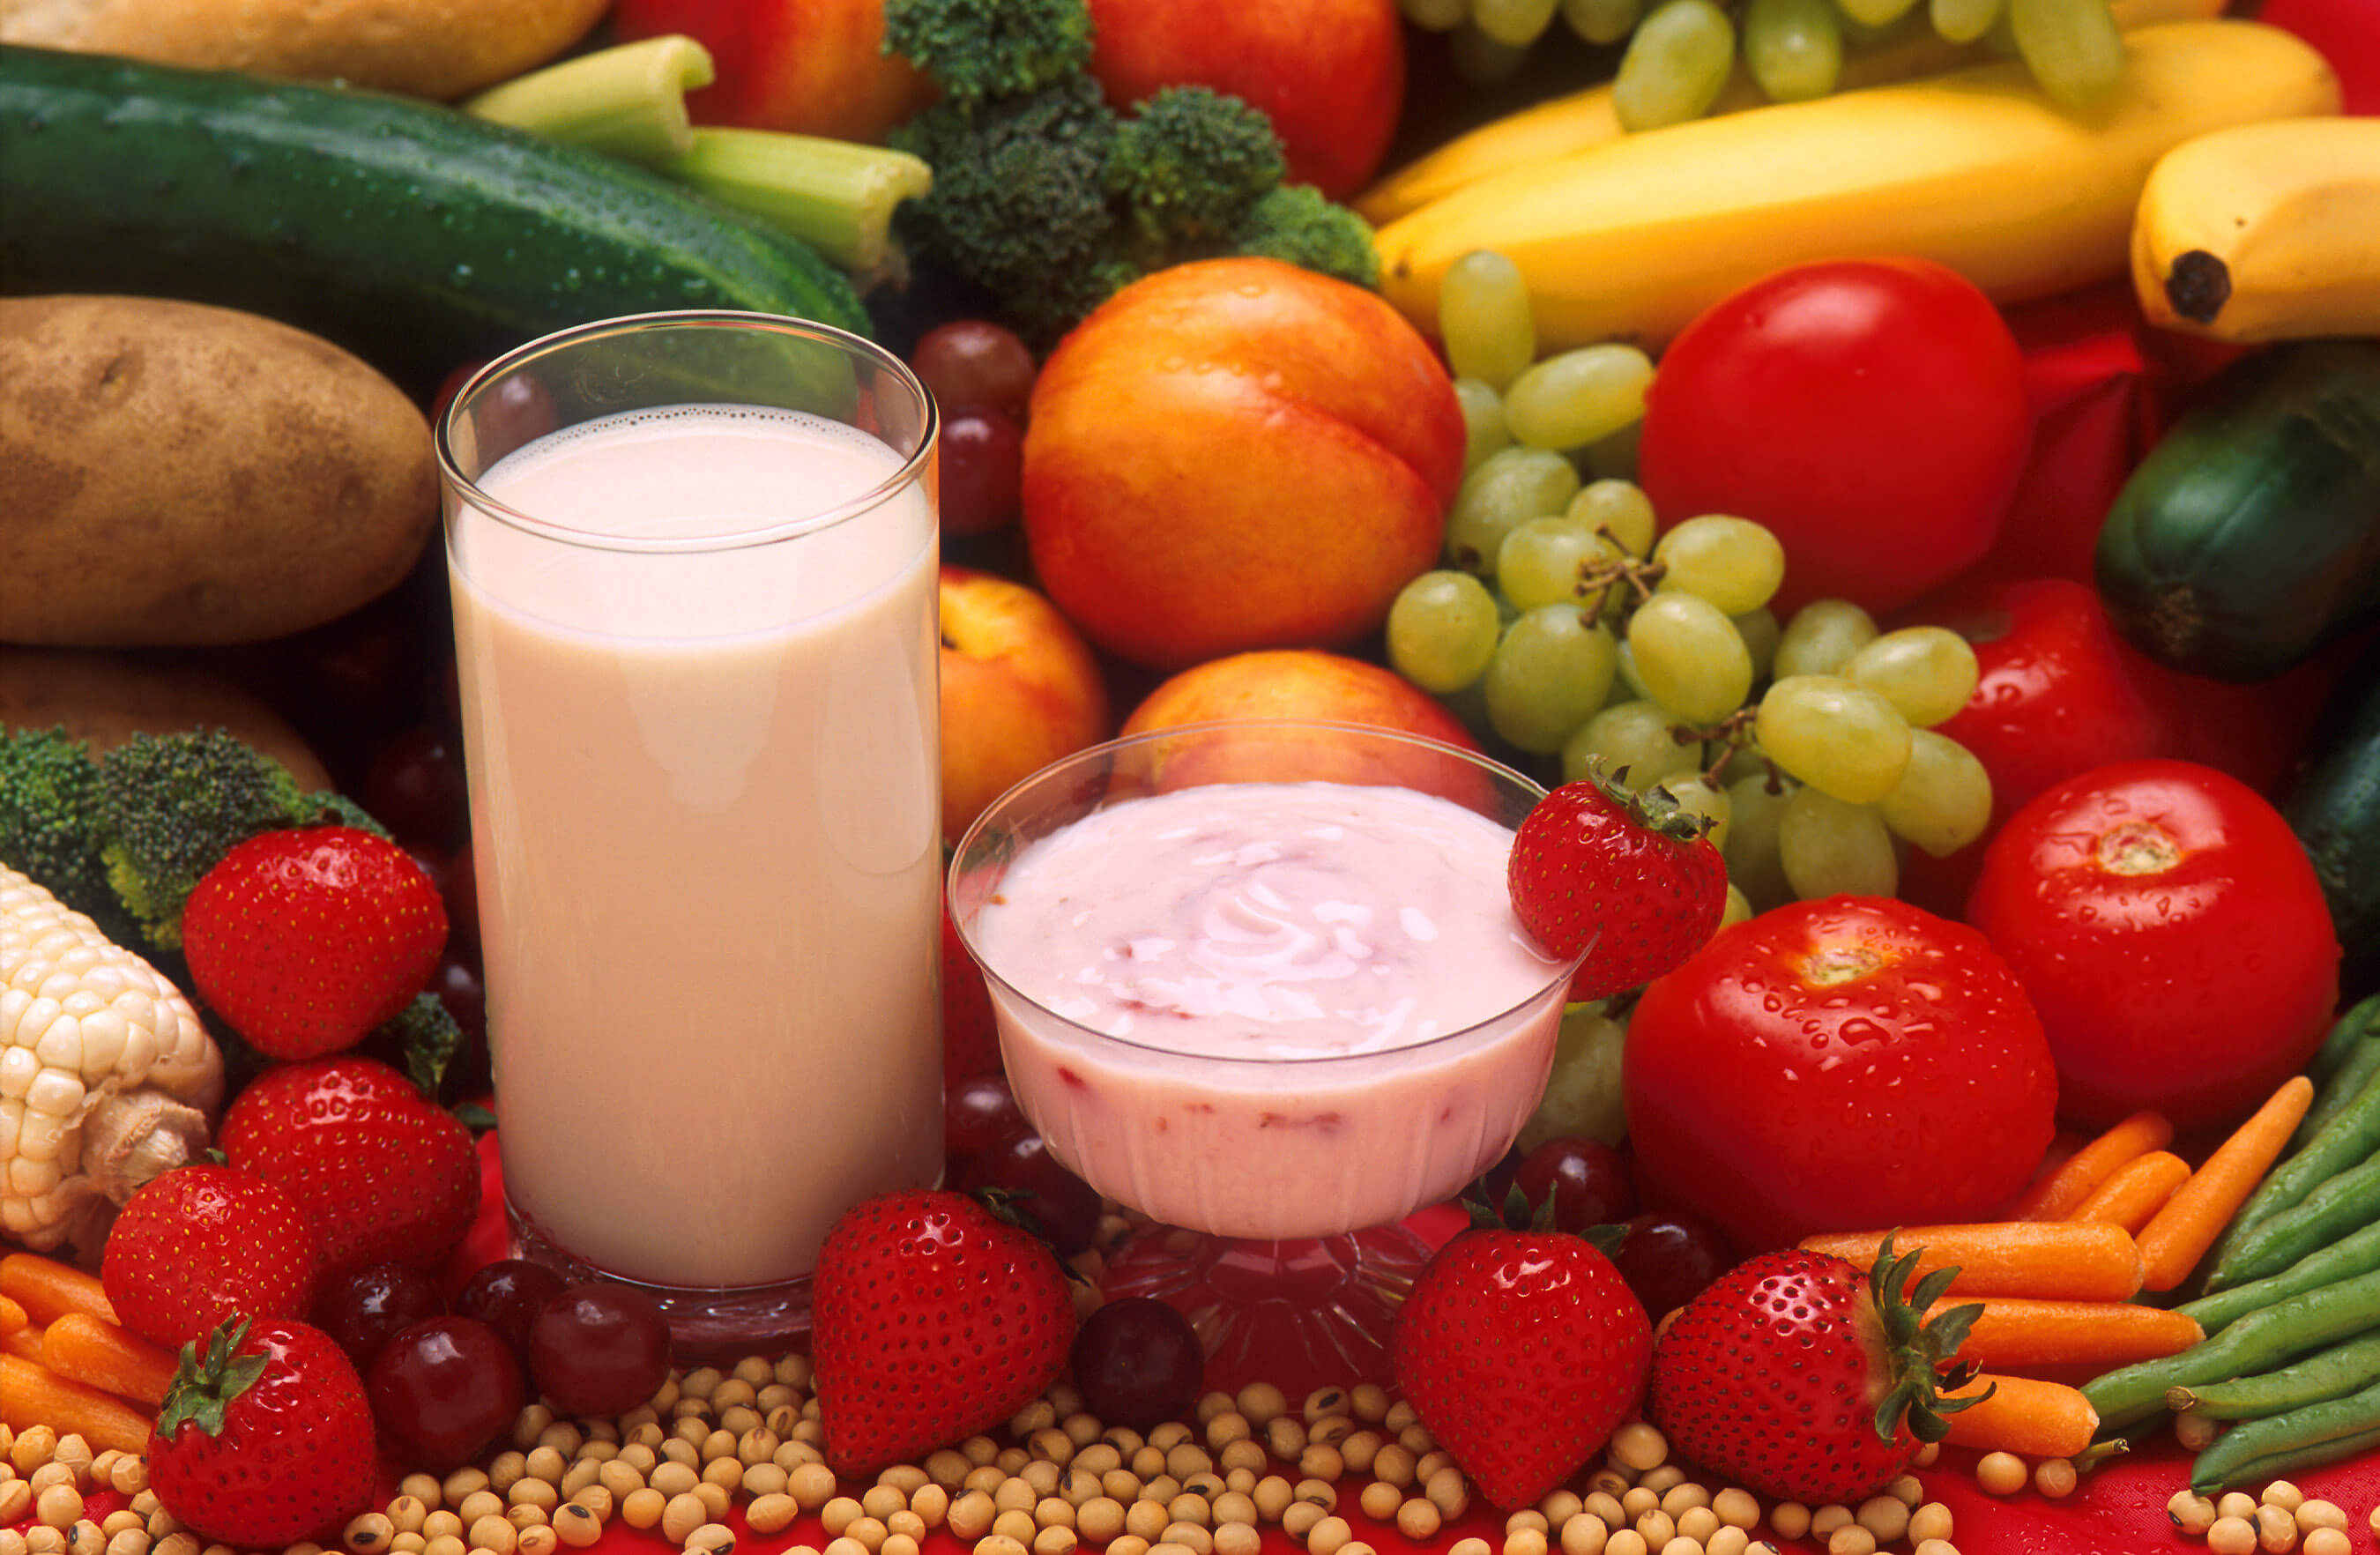 Purinarme Ernährung hilft dabei, erhöhte Harnsäure zu senken - mit mehr Gemüse, Obst, fettarmen Milchprodukten und Getreide